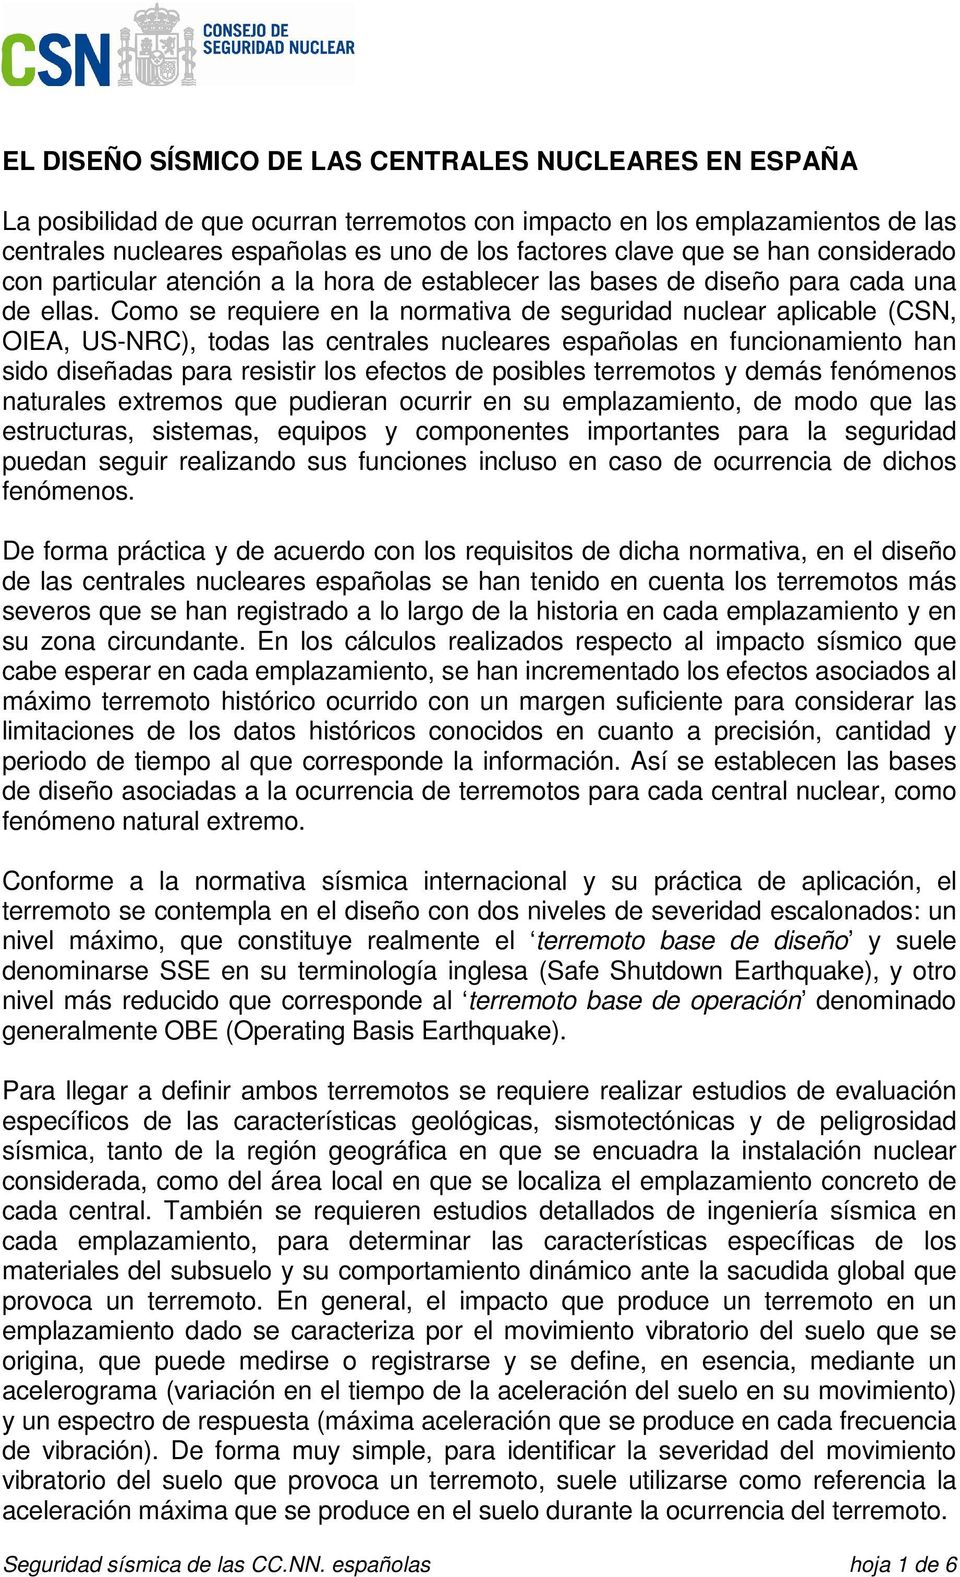 Como se requiere en la normativa de seguridad nuclear aplicable (CSN, OIEA, US-NRC), todas las centrales nucleares españolas en funcionamiento han sido diseñadas para resistir los efectos de posibles